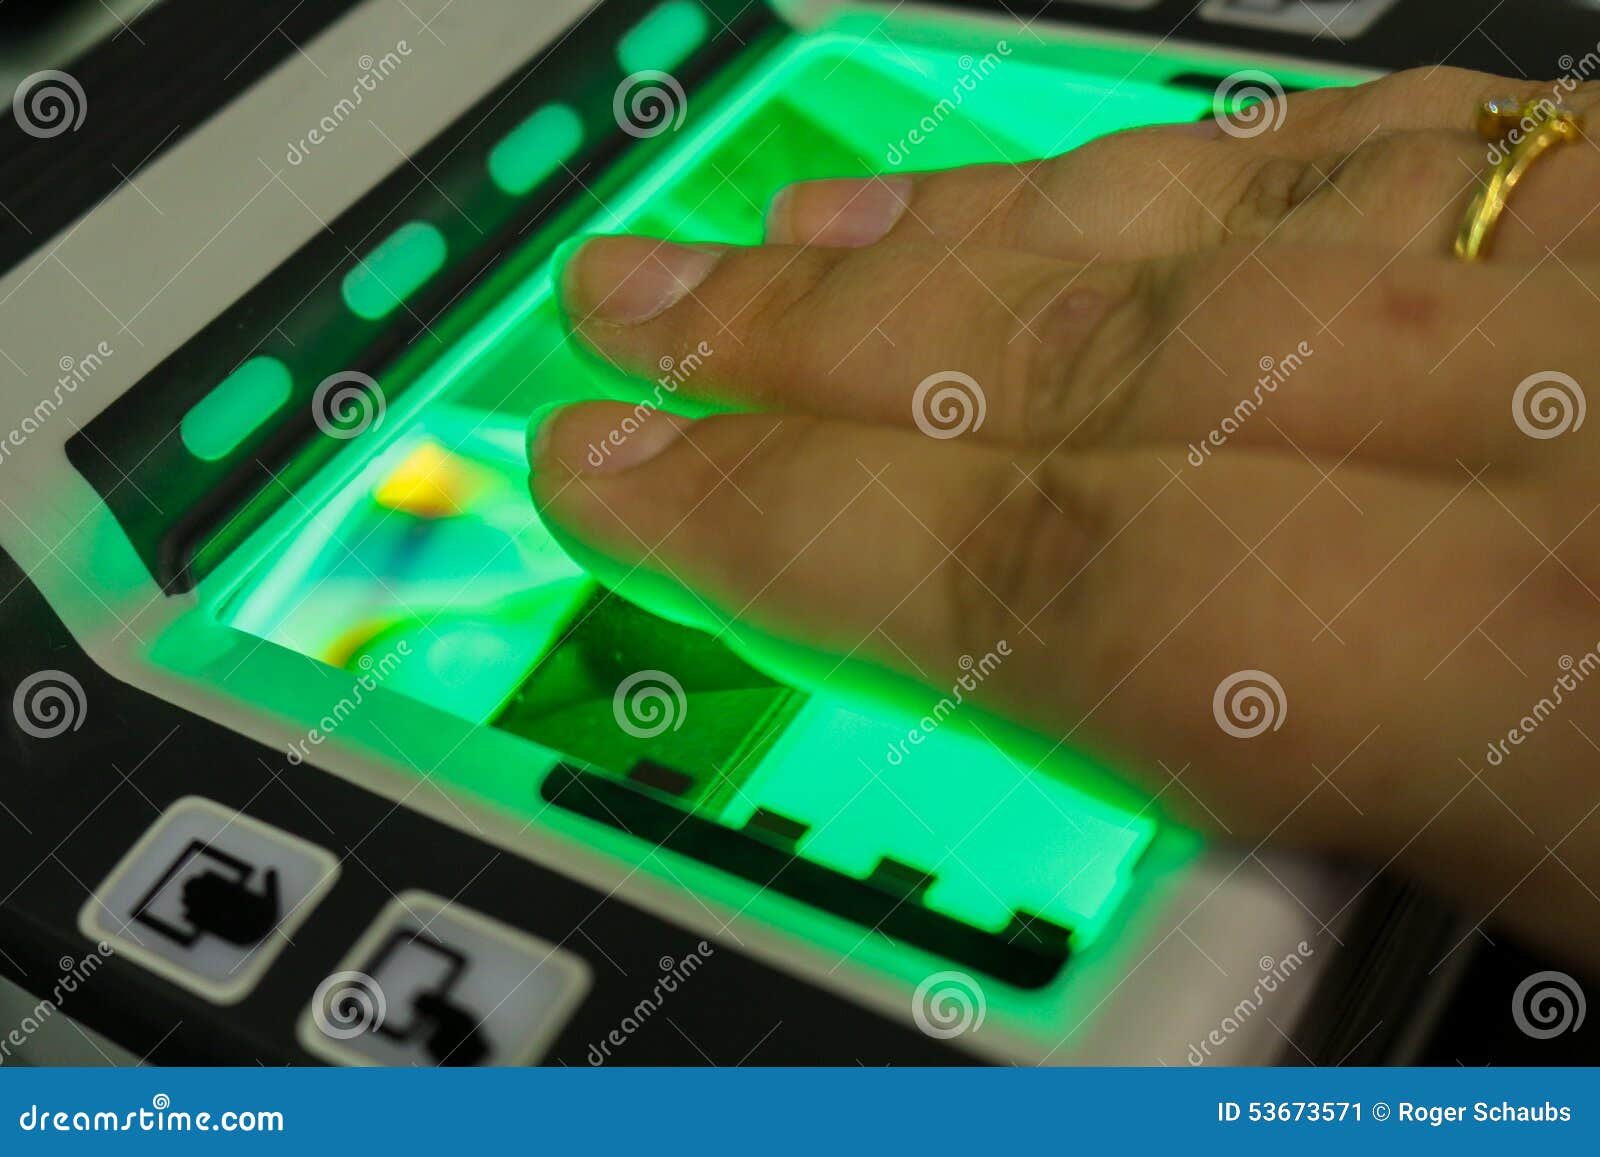 biometric fingerprint scanner